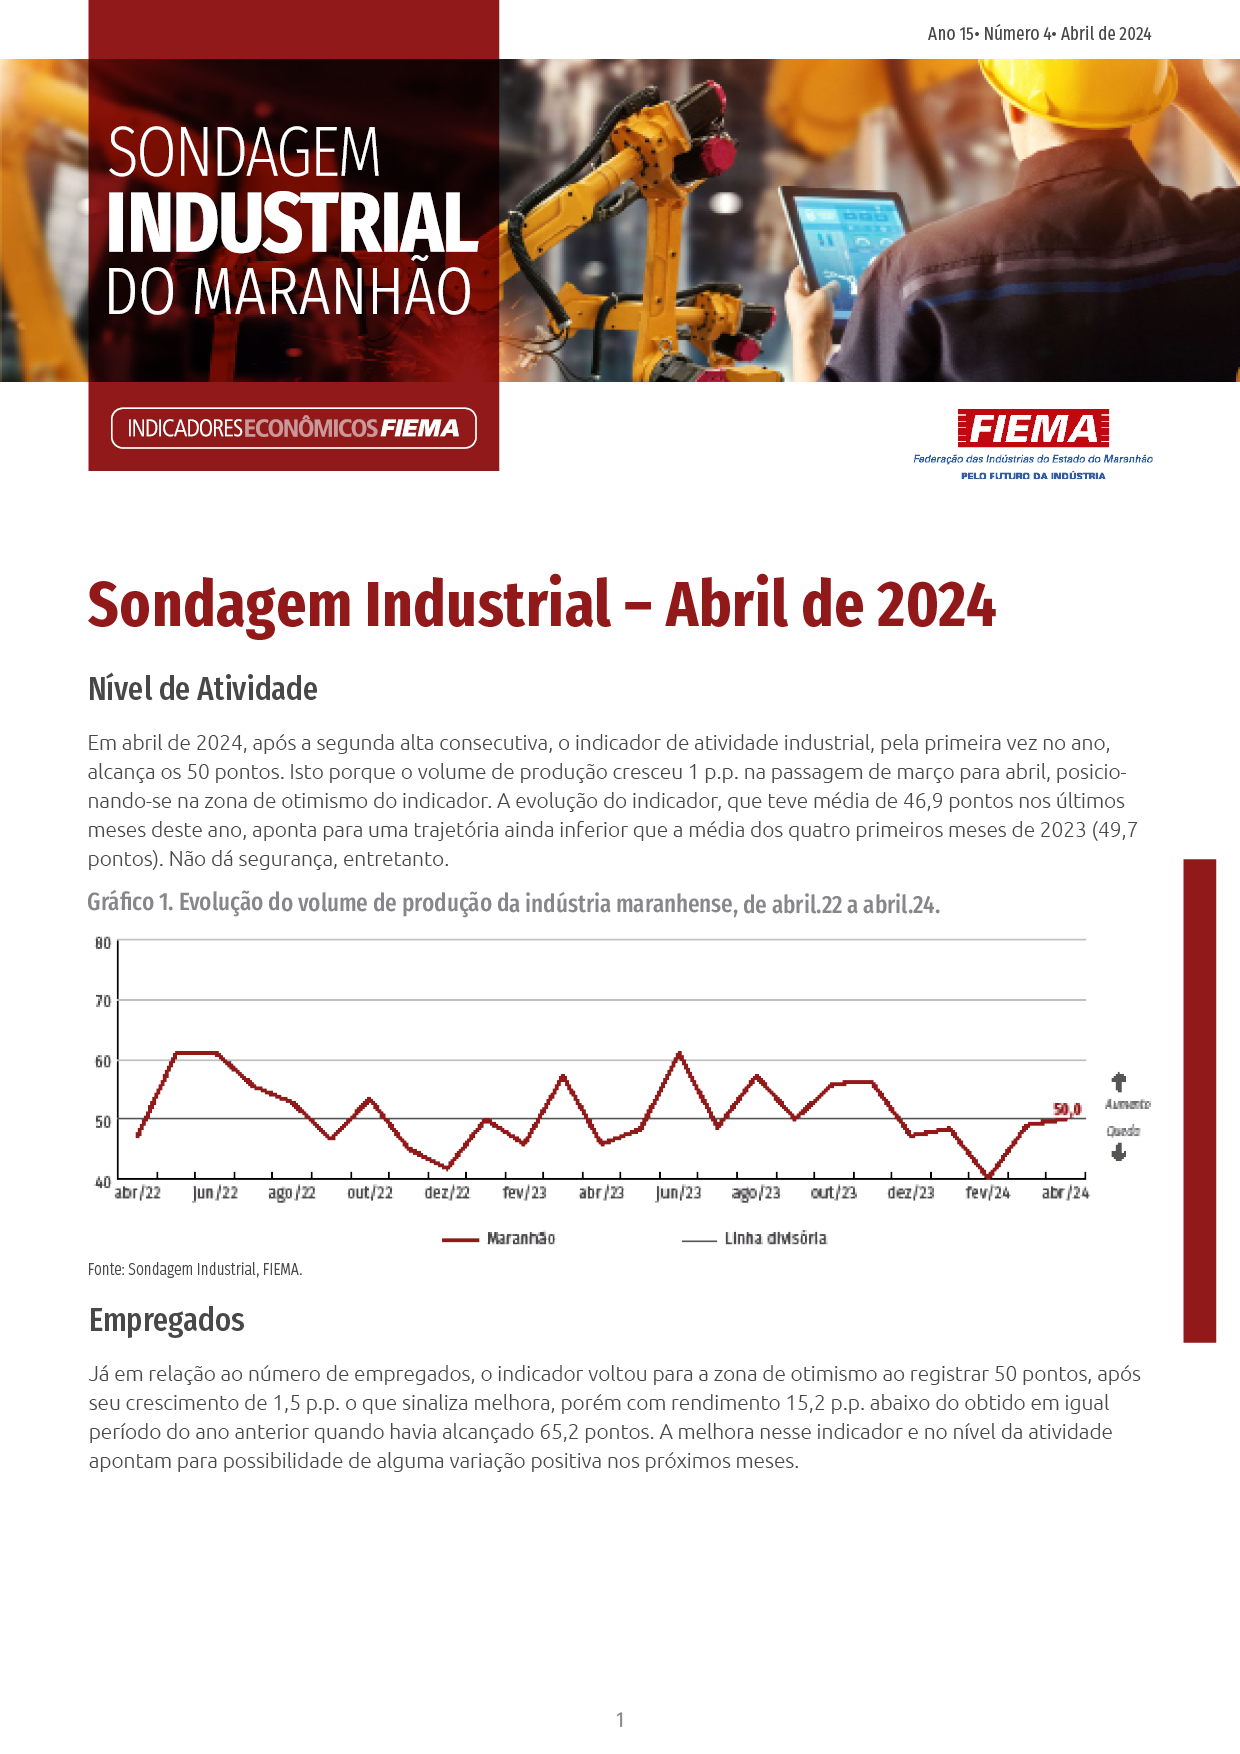 Sondagem Industrial do Maranhão